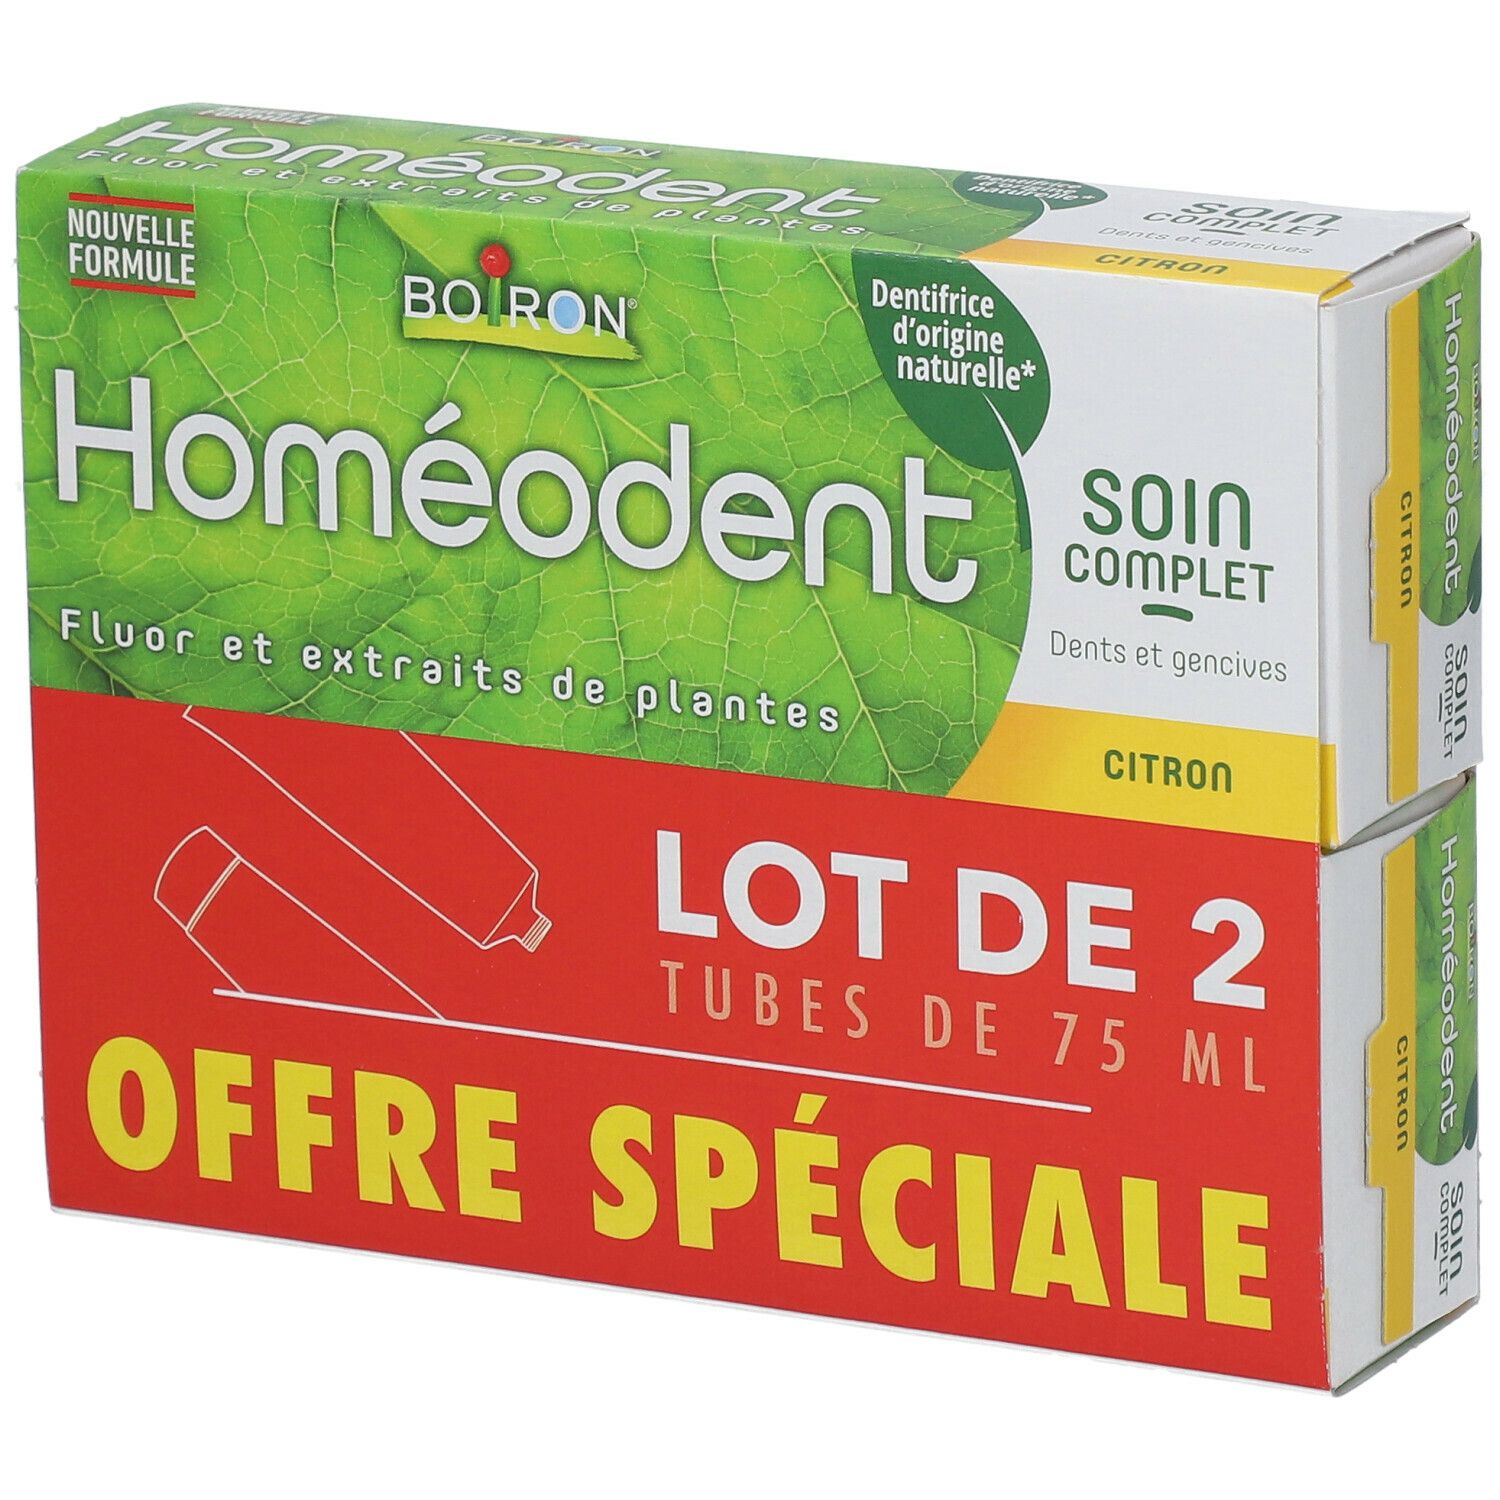 Boiron homéodent® Soin Complet Dents et Gencives - Citron